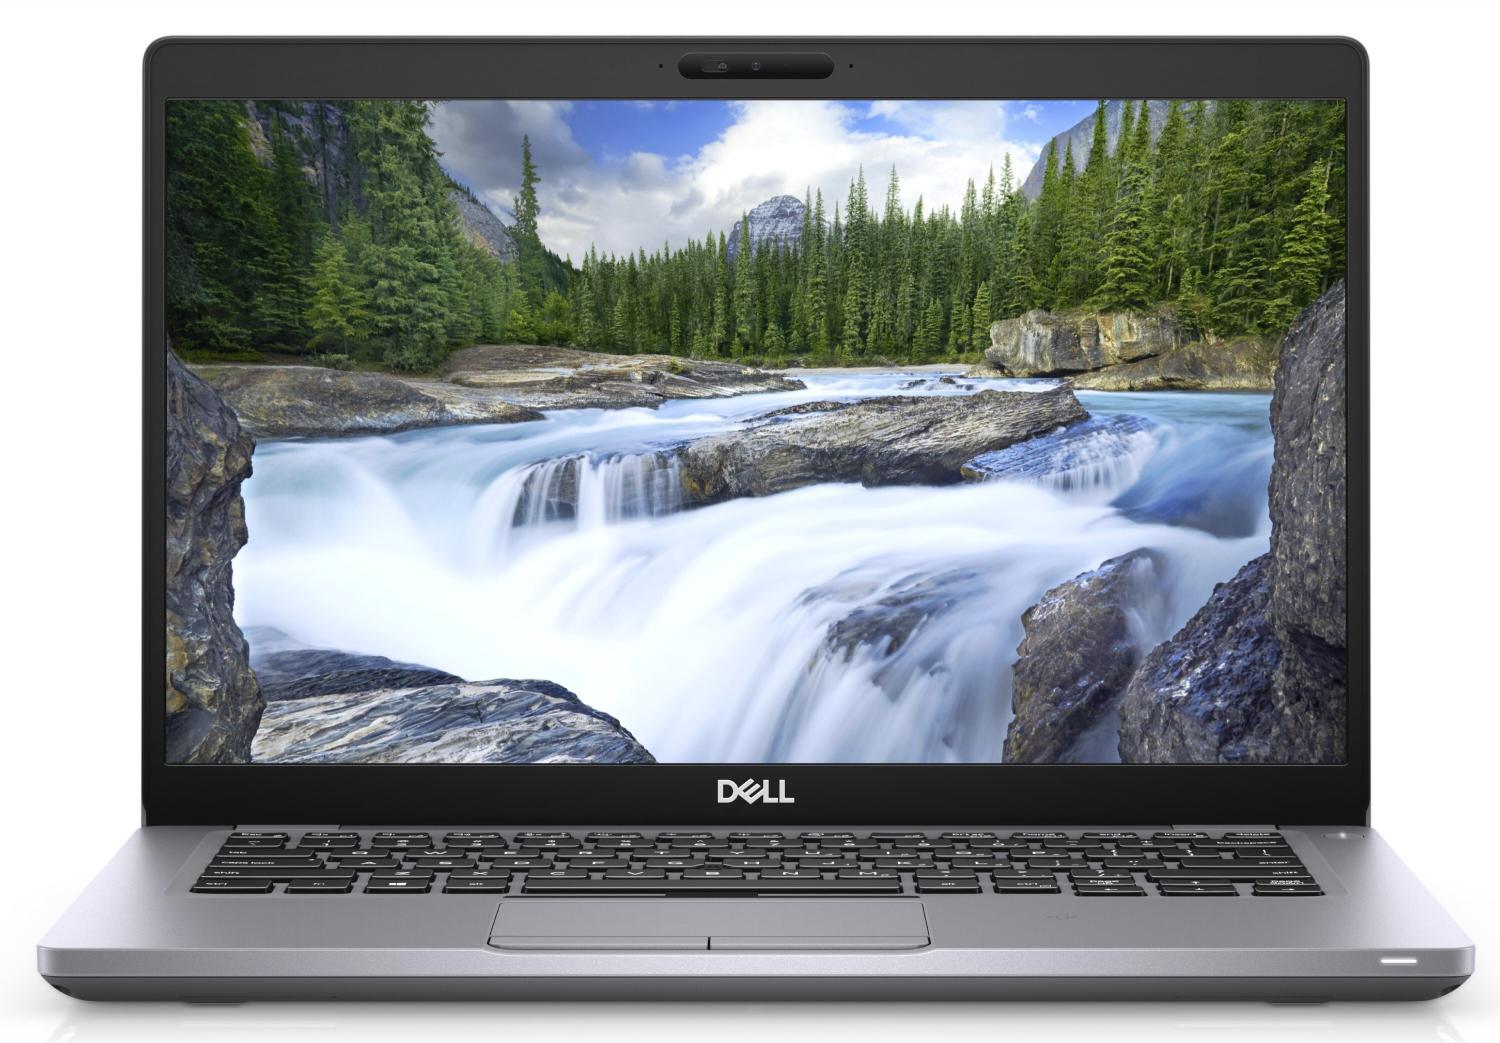 Ноутбук Dell Latitude 5410 Core i7-10610U (1,8GHz) 14,0" FullHD WVA Antiglare 300 nits 16GB (1x16GB) DDR4 512GB SSD Intel UHD 620 FPR,TPM,Thunderbolt 3,4 cell (68Whr) W10 Pro 3y NBD,gray